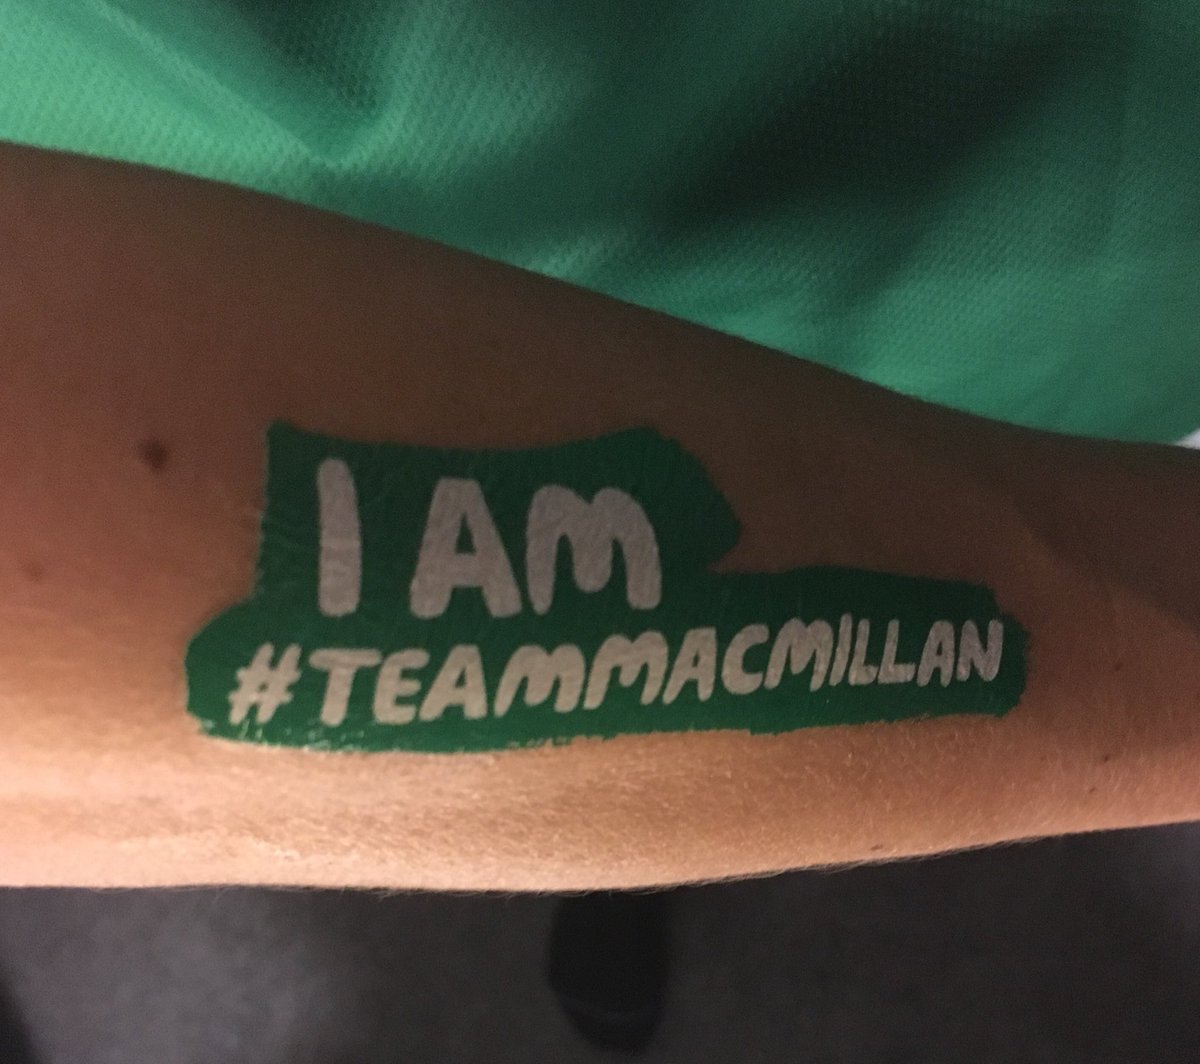 Tattoo is on. Here I come @teaammacmillan #edinburghhalfmarathon @MyPeakChallenge @SamHeughan @RunPeakerRun